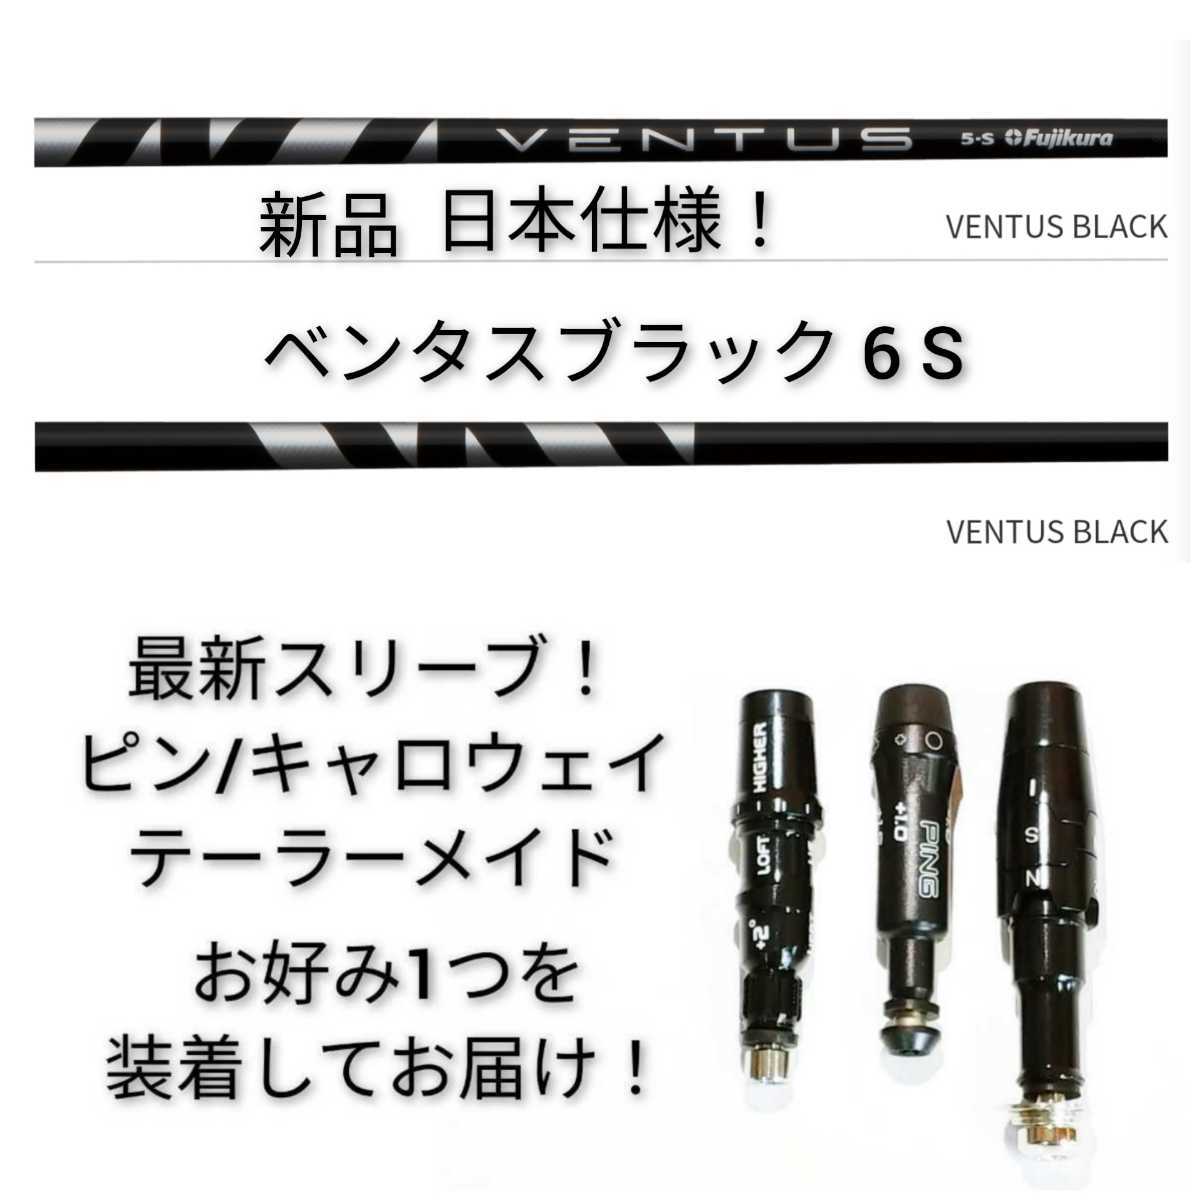 ventus black 6s ピンスリーブ - 通販 - gofukuyasan.com